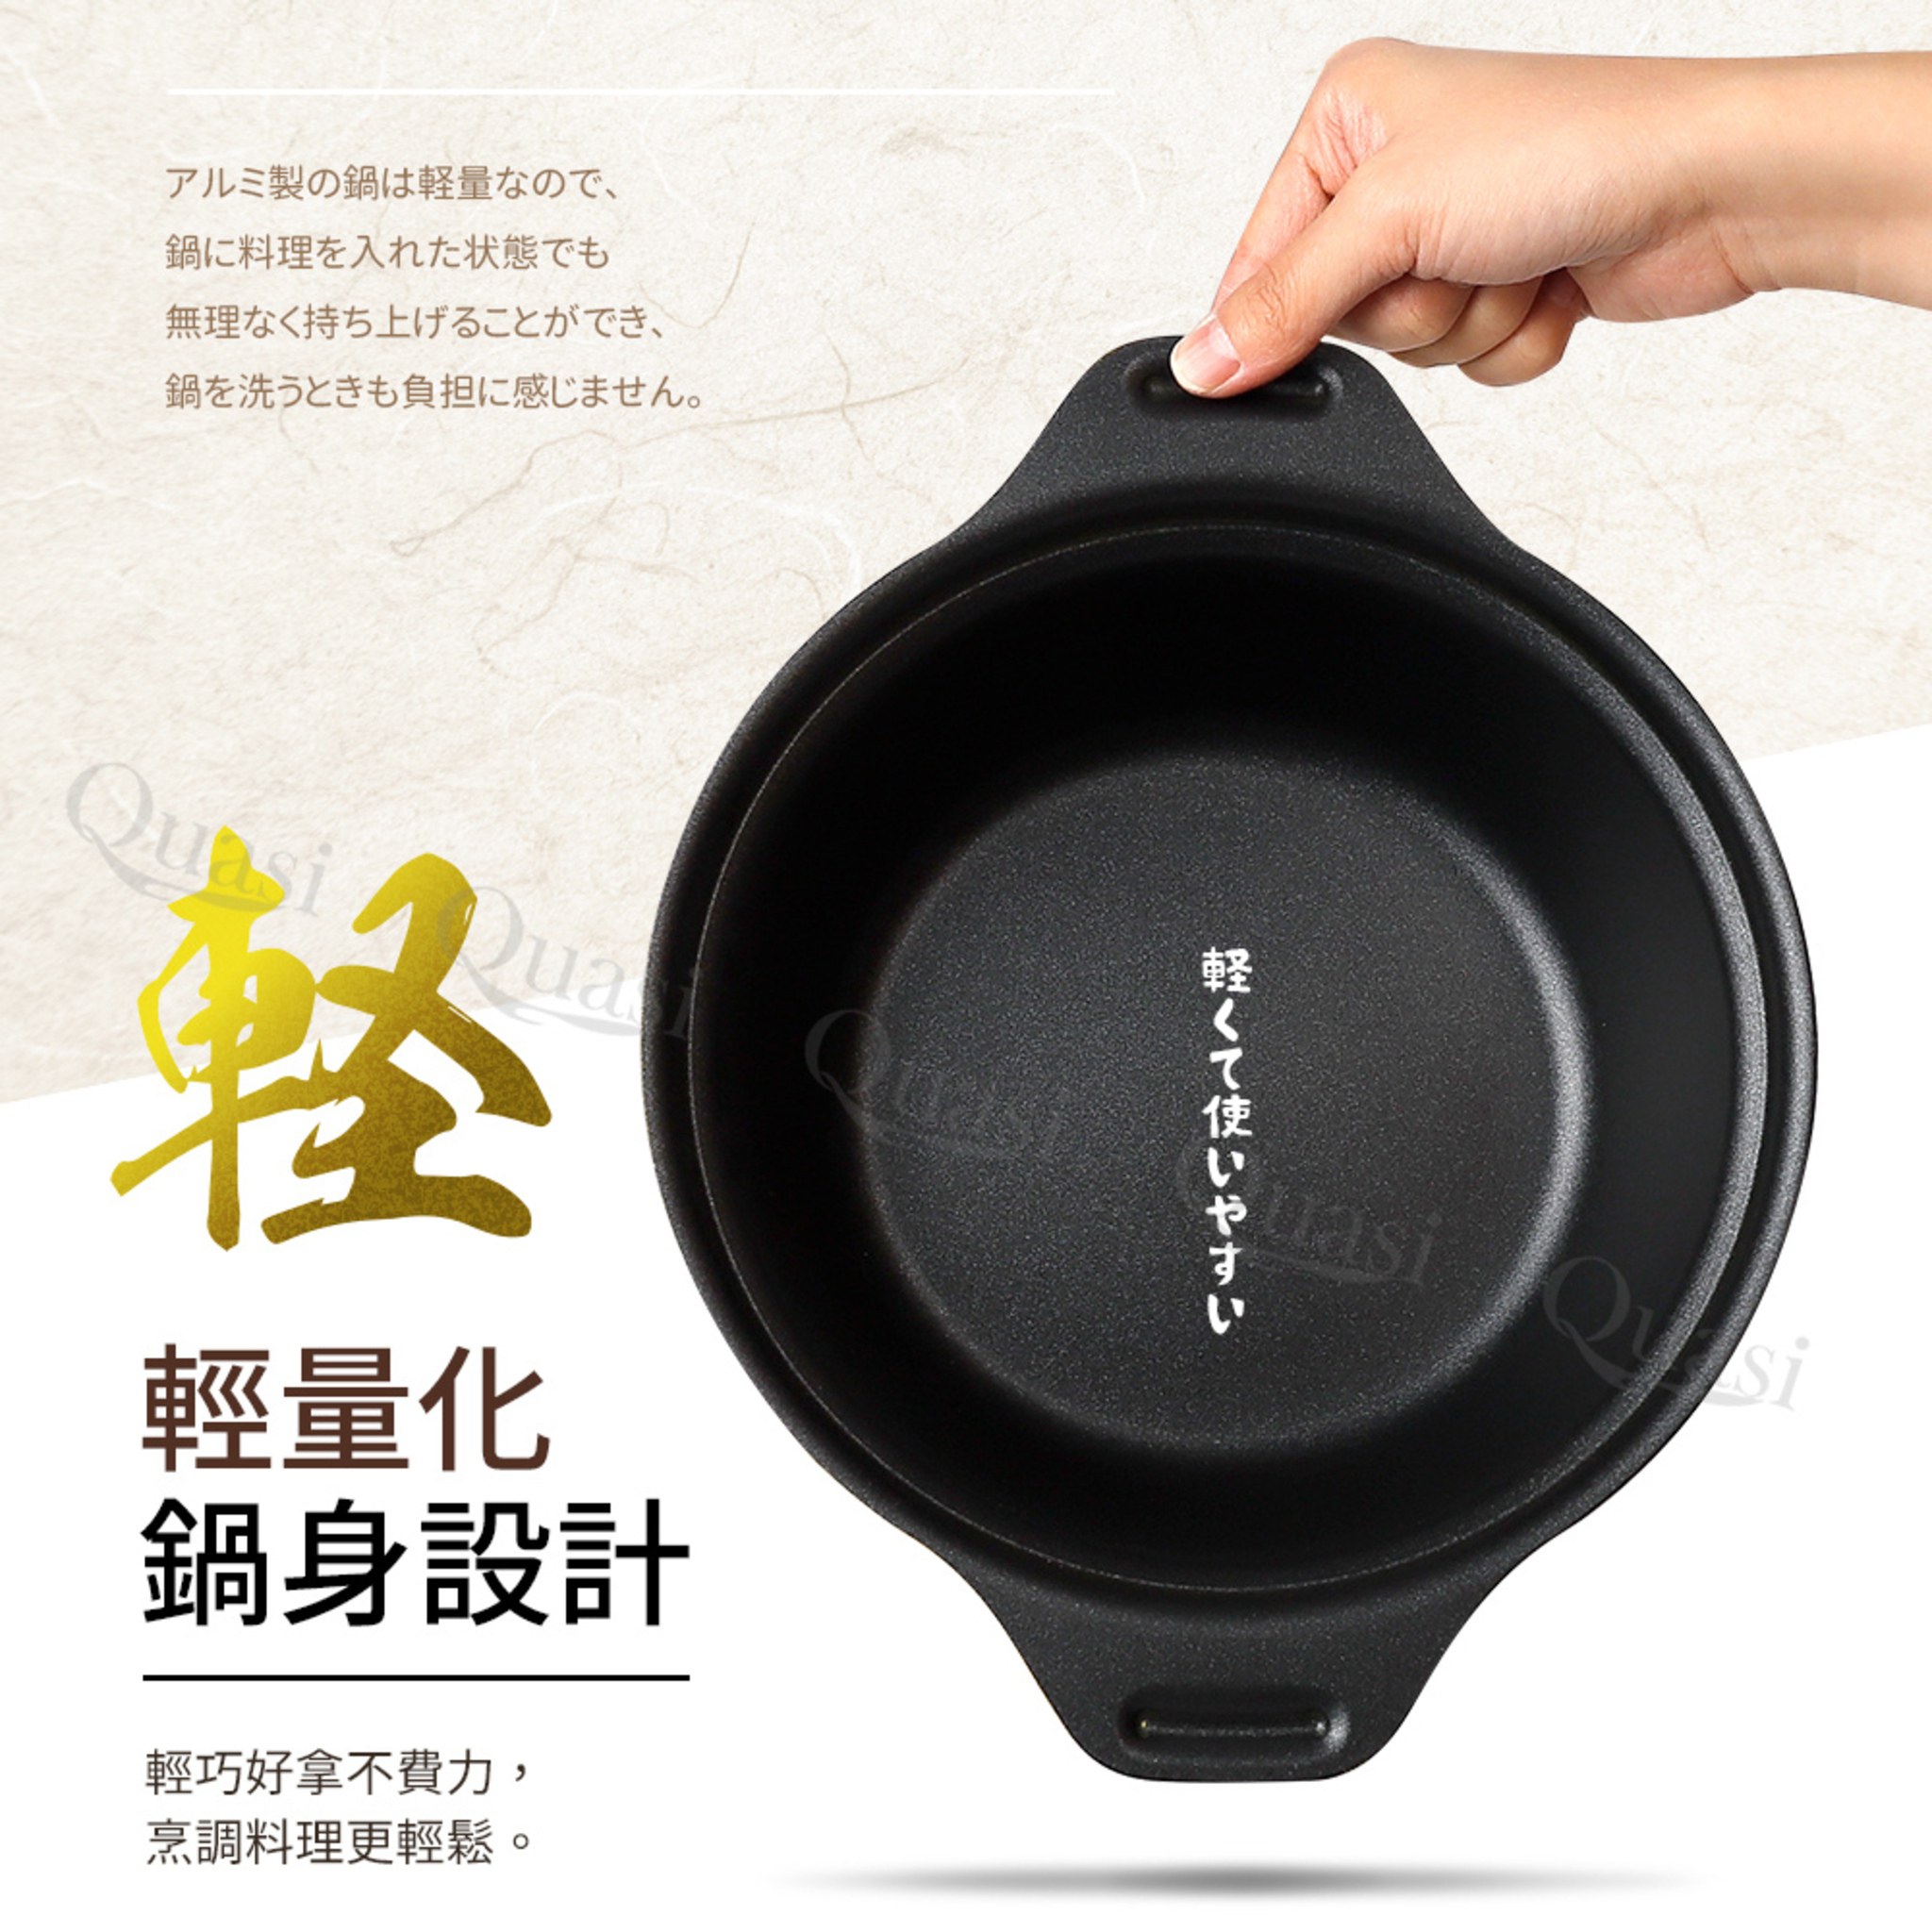 日本Pearl 和膳庵 料理鍋 輕量化IH湯鍋王球餐具 (6)